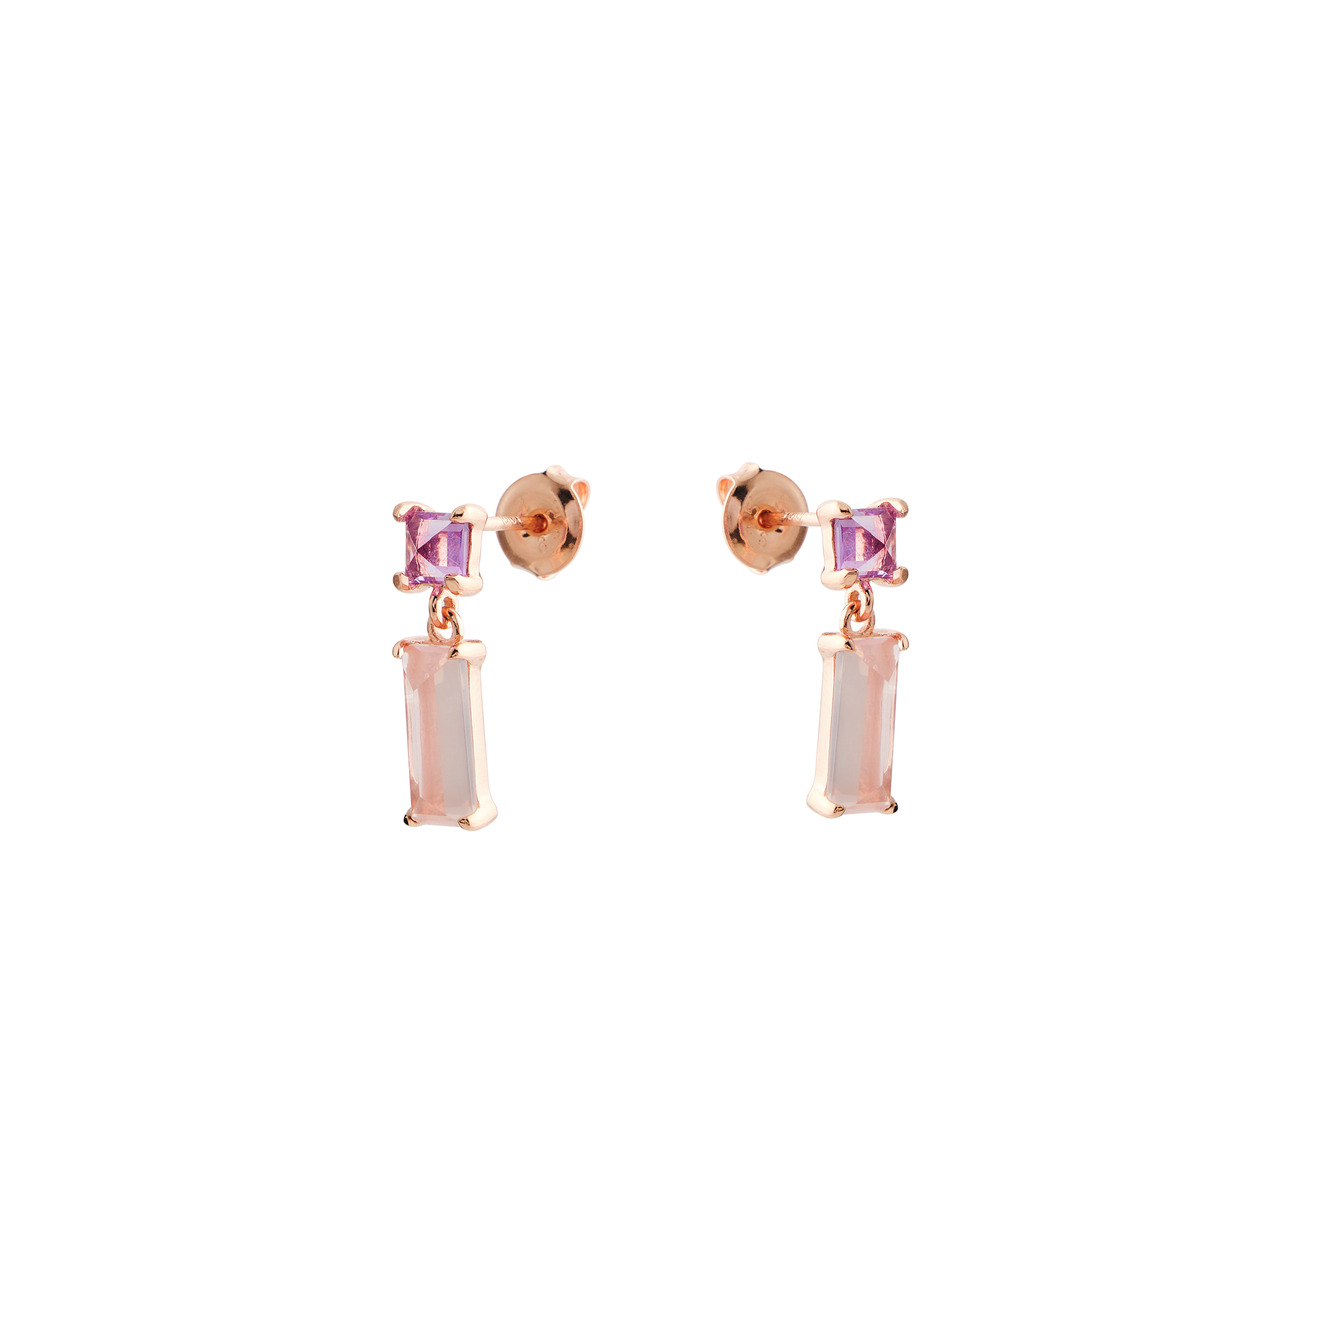 Wisteria Gems Позолоченные серьги с квадратным аметистом и прямоугольным розовым кварцем wisteria gems серьги из серебра с двумя большими лунными камнями и дымчатым кварцем двумя серебряными шариками